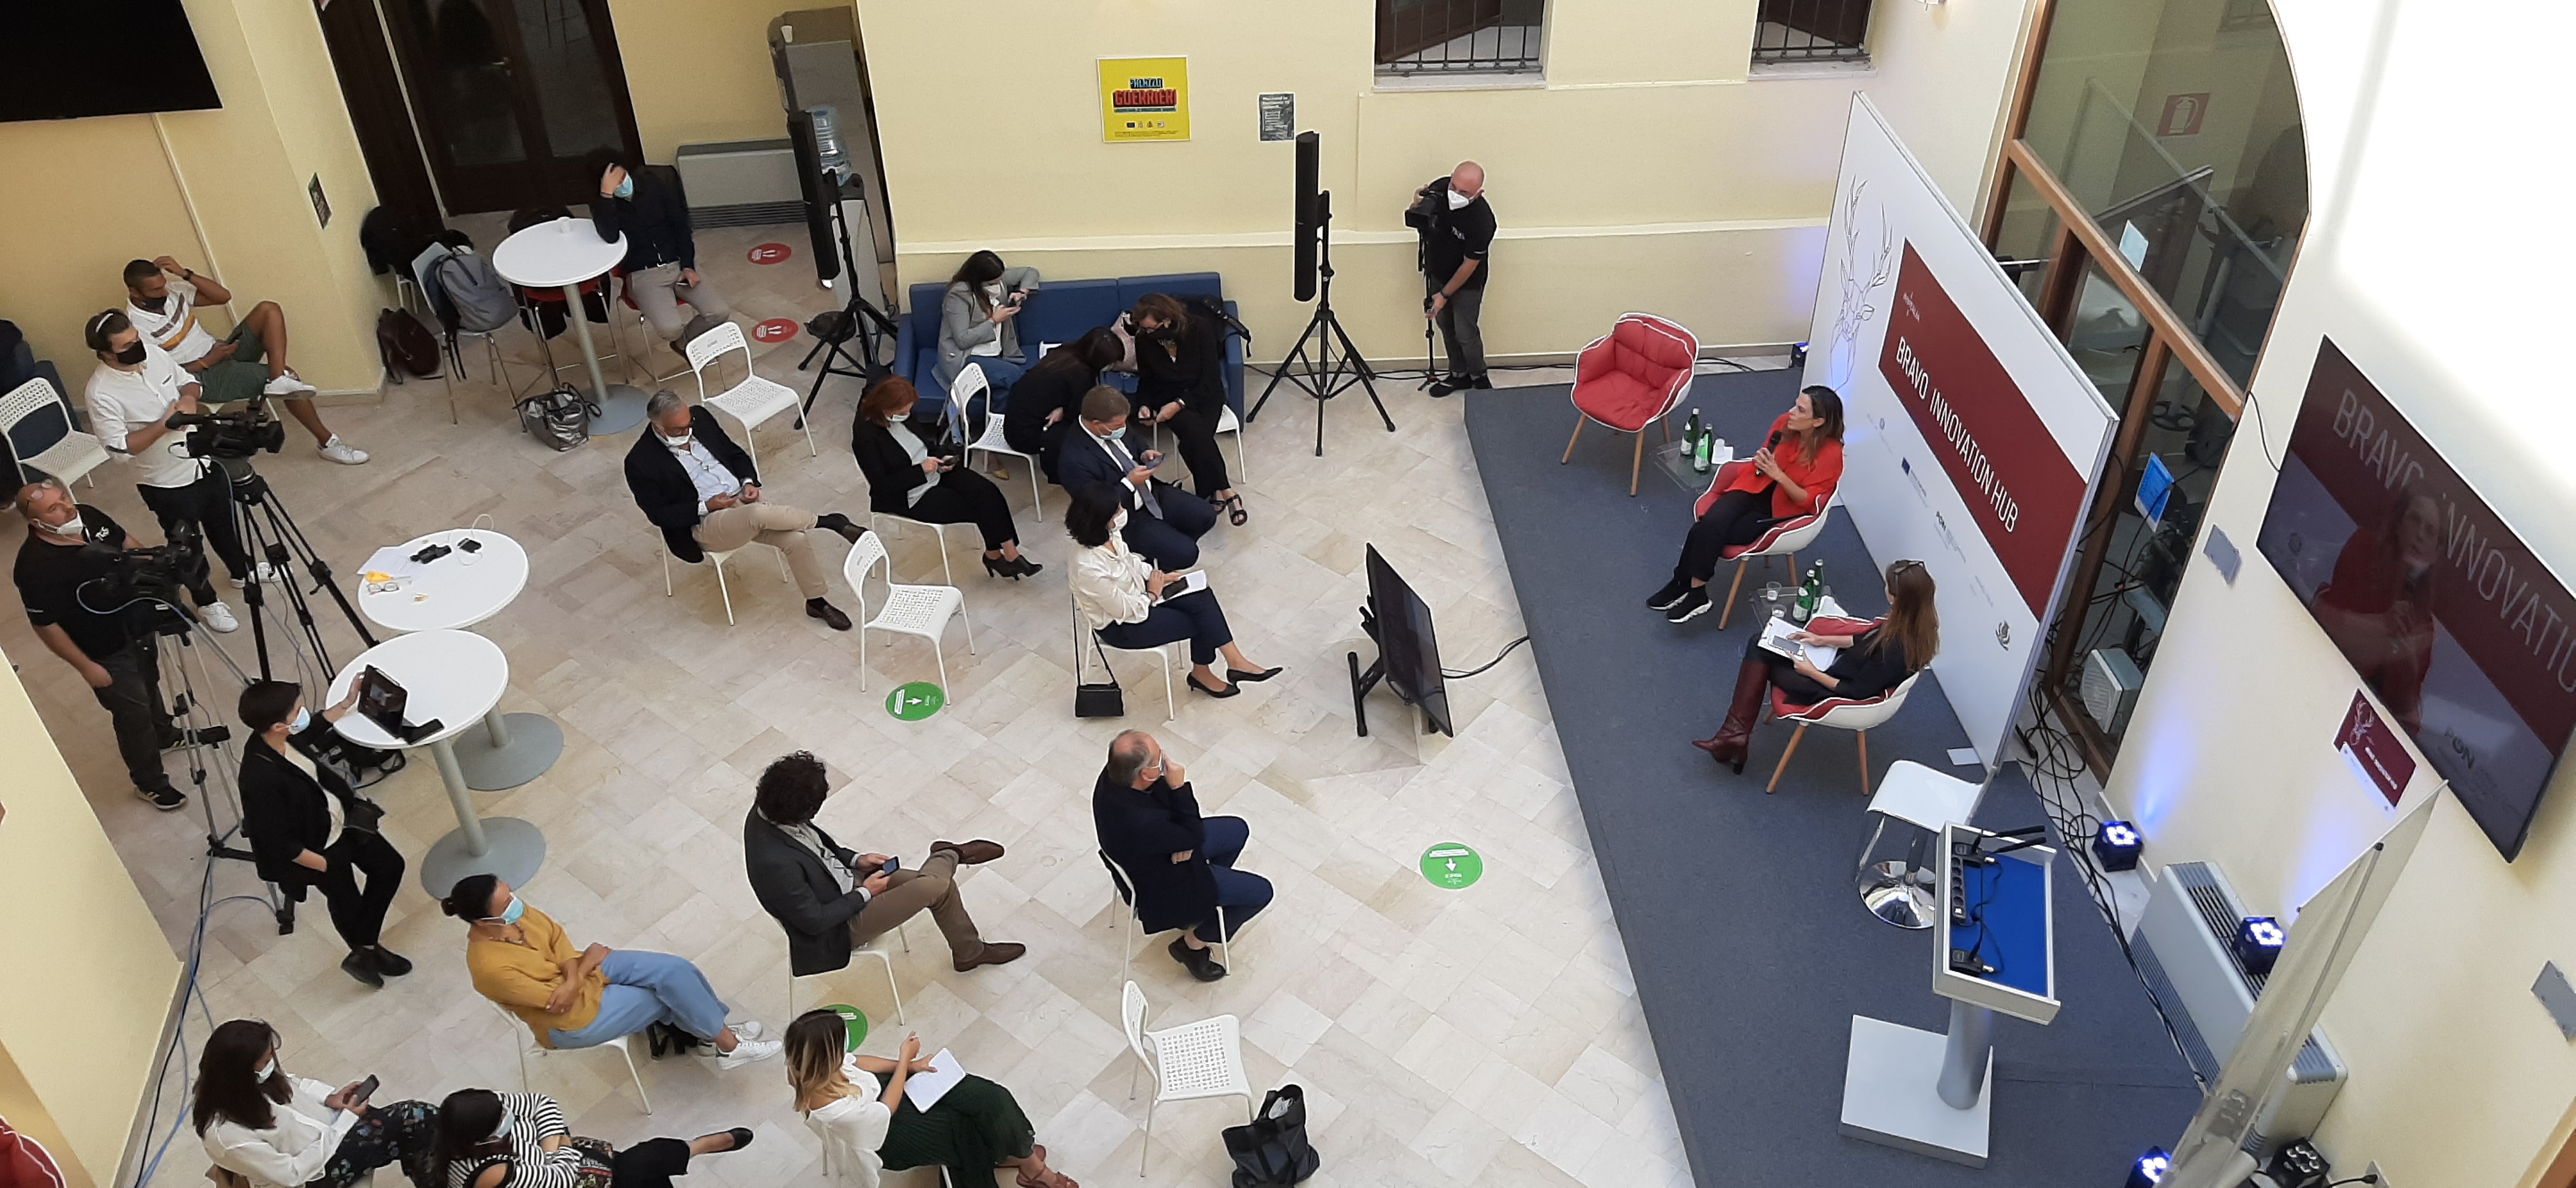 A Brindisi nasce “Bravo Innovation Hub”, il primo acceleratore MiSE-Invitalia per le imprese innovative del Mezzogiorno